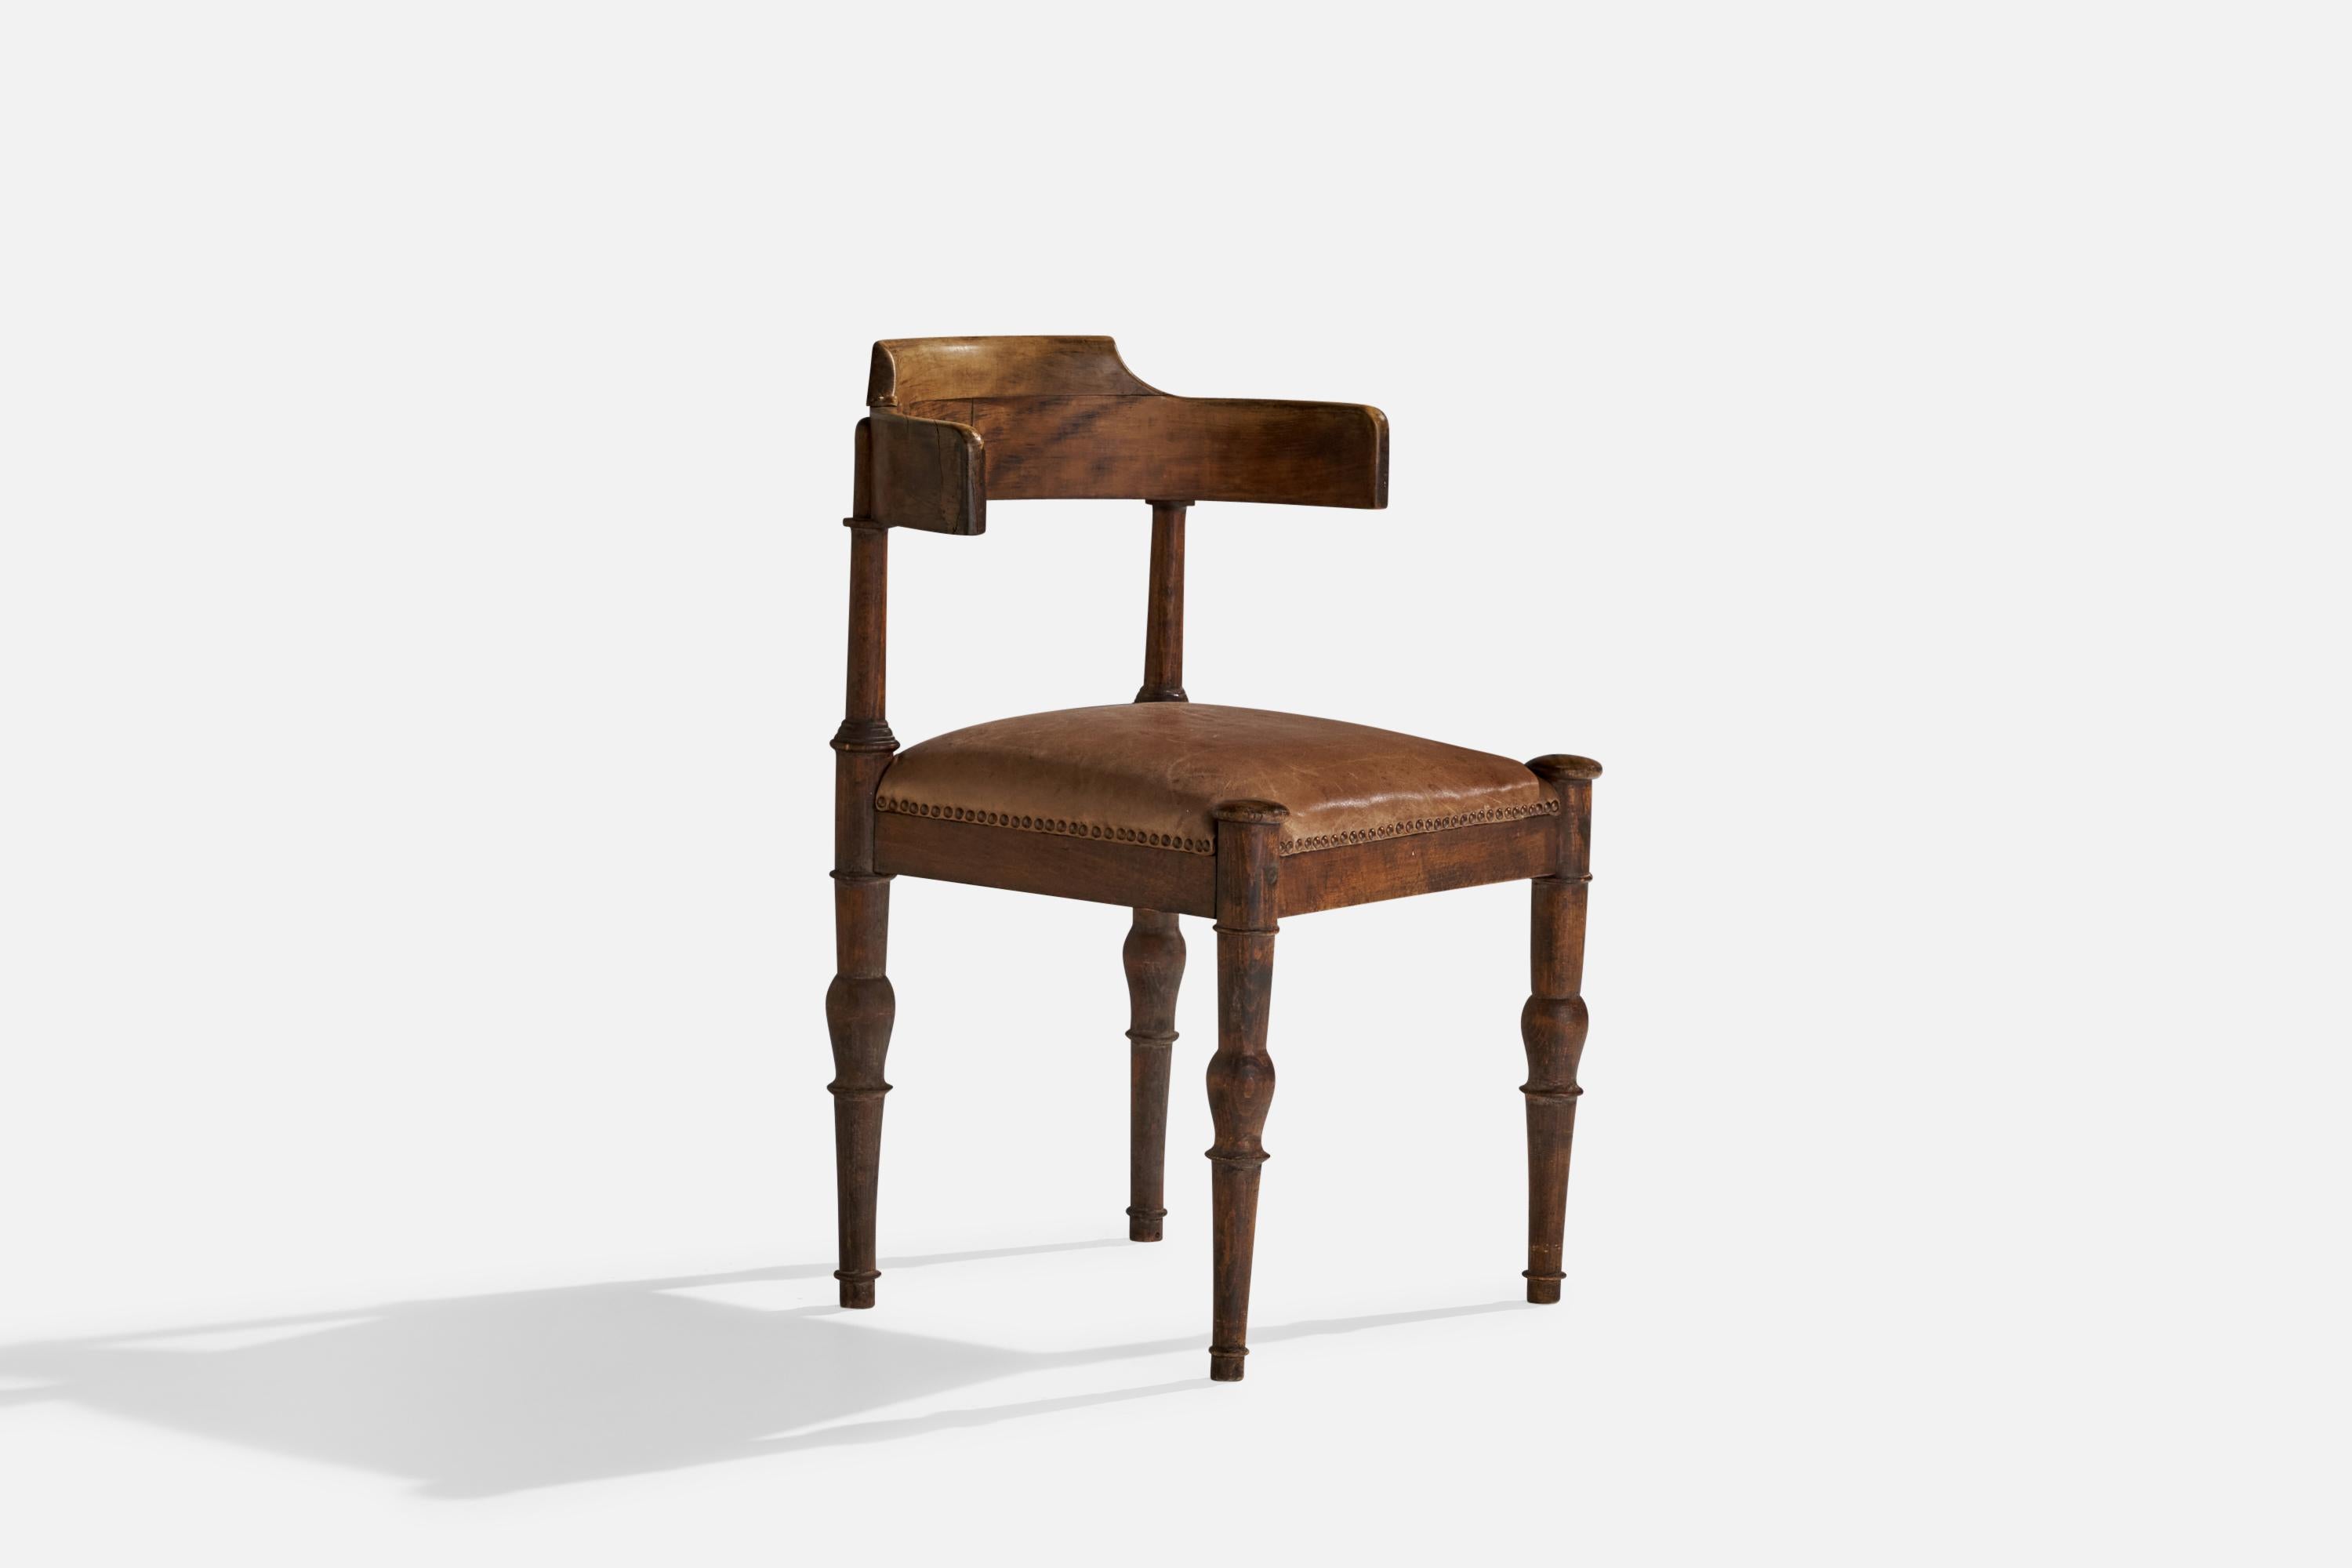 Beistellstuhl aus Leder und Holz, entworfen und hergestellt von Thorvald Bindesbøll, Dänemark, um 1900.

Sitzhöhe 19